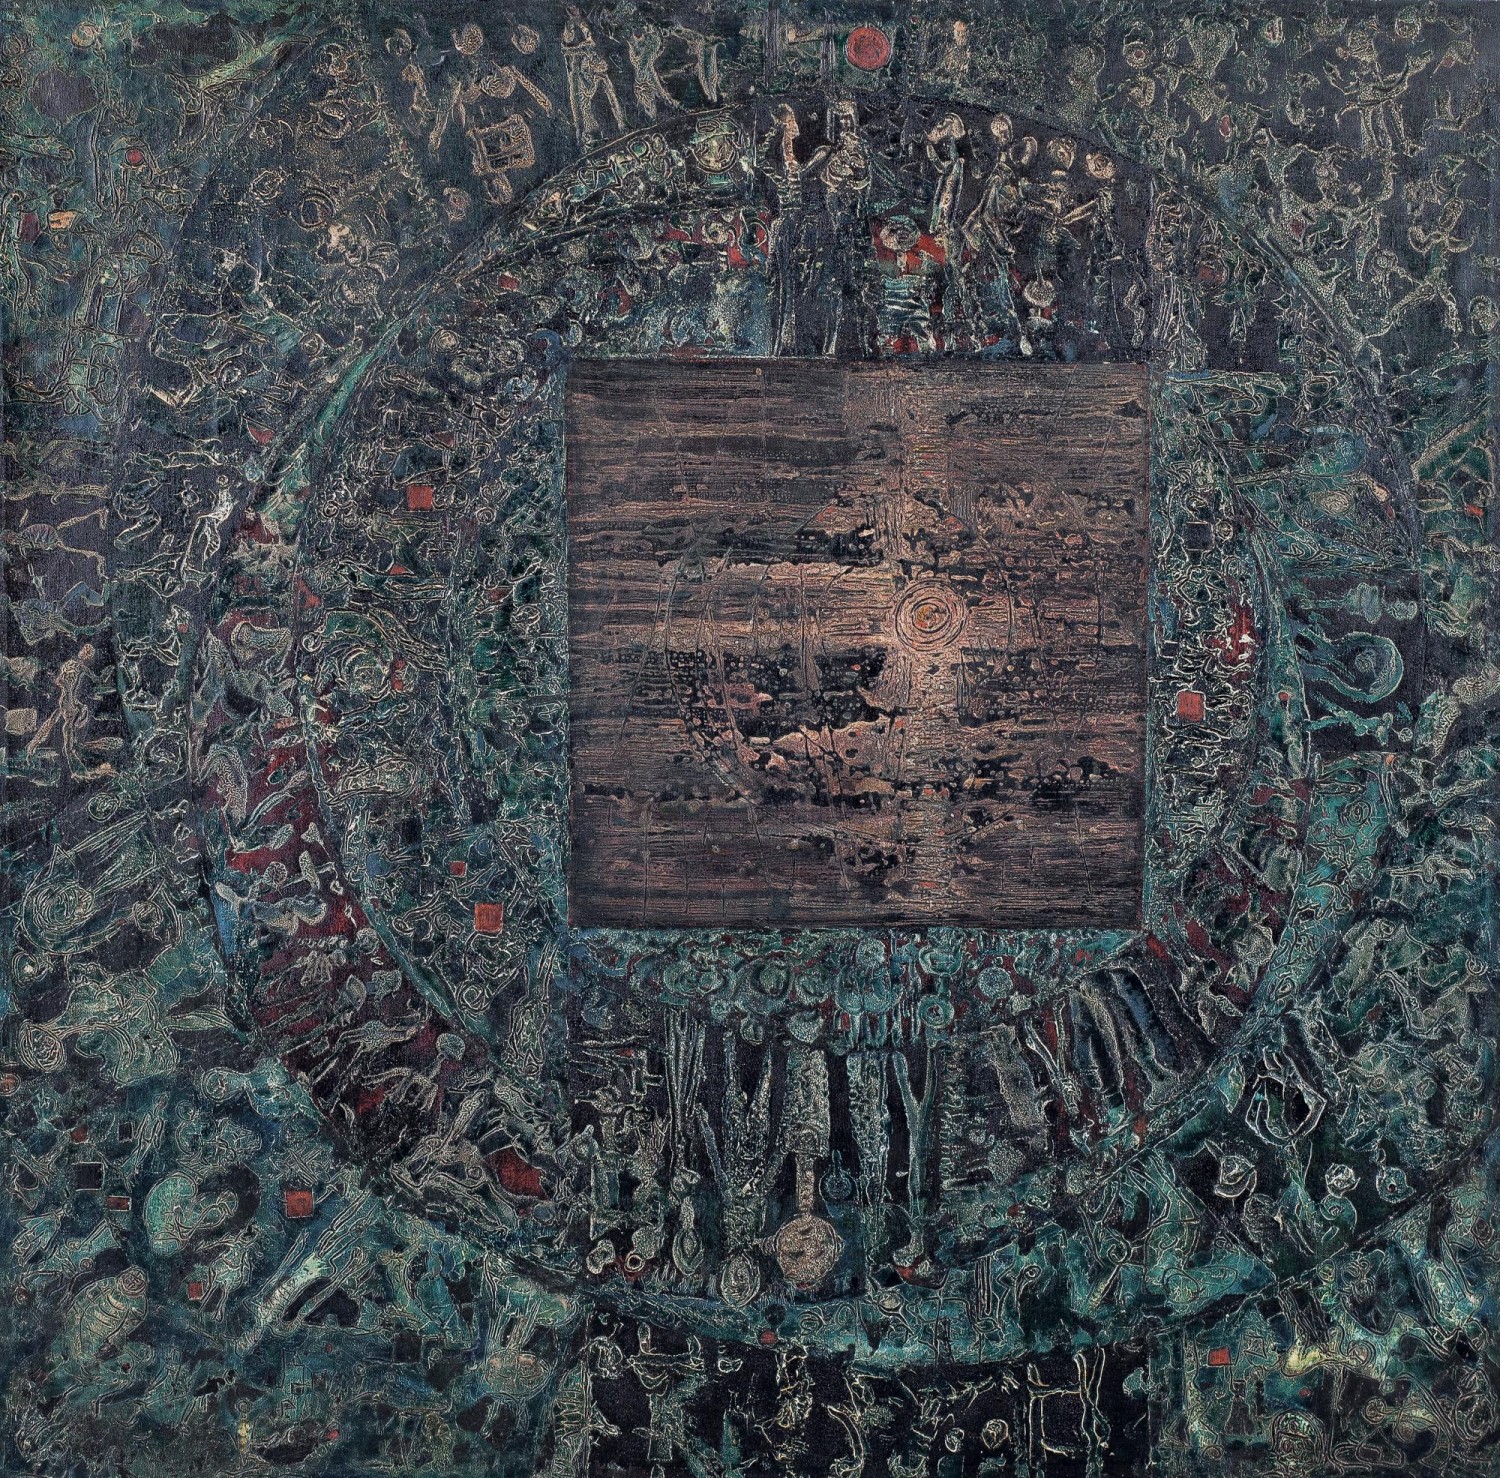 Jan Koblasa: Bez názvu, 1965, kombinovaná technika na plátně, 150 x 151 cm,  cena: 1 480 000 Kč, European Arts 4. 5. 2019